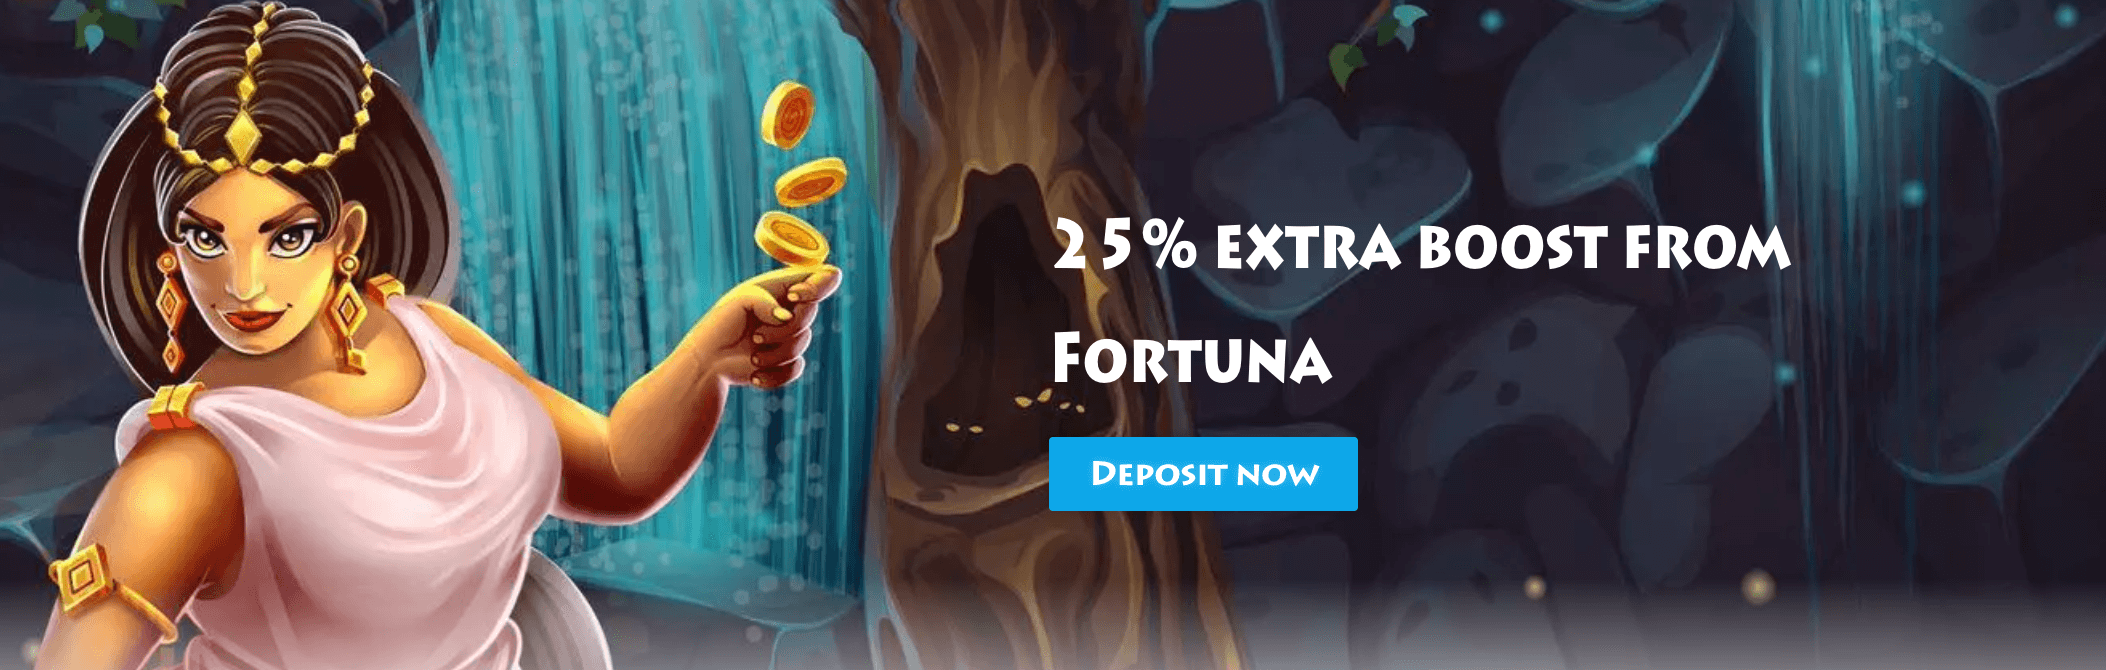 Casino Gods Fortuna Bonus